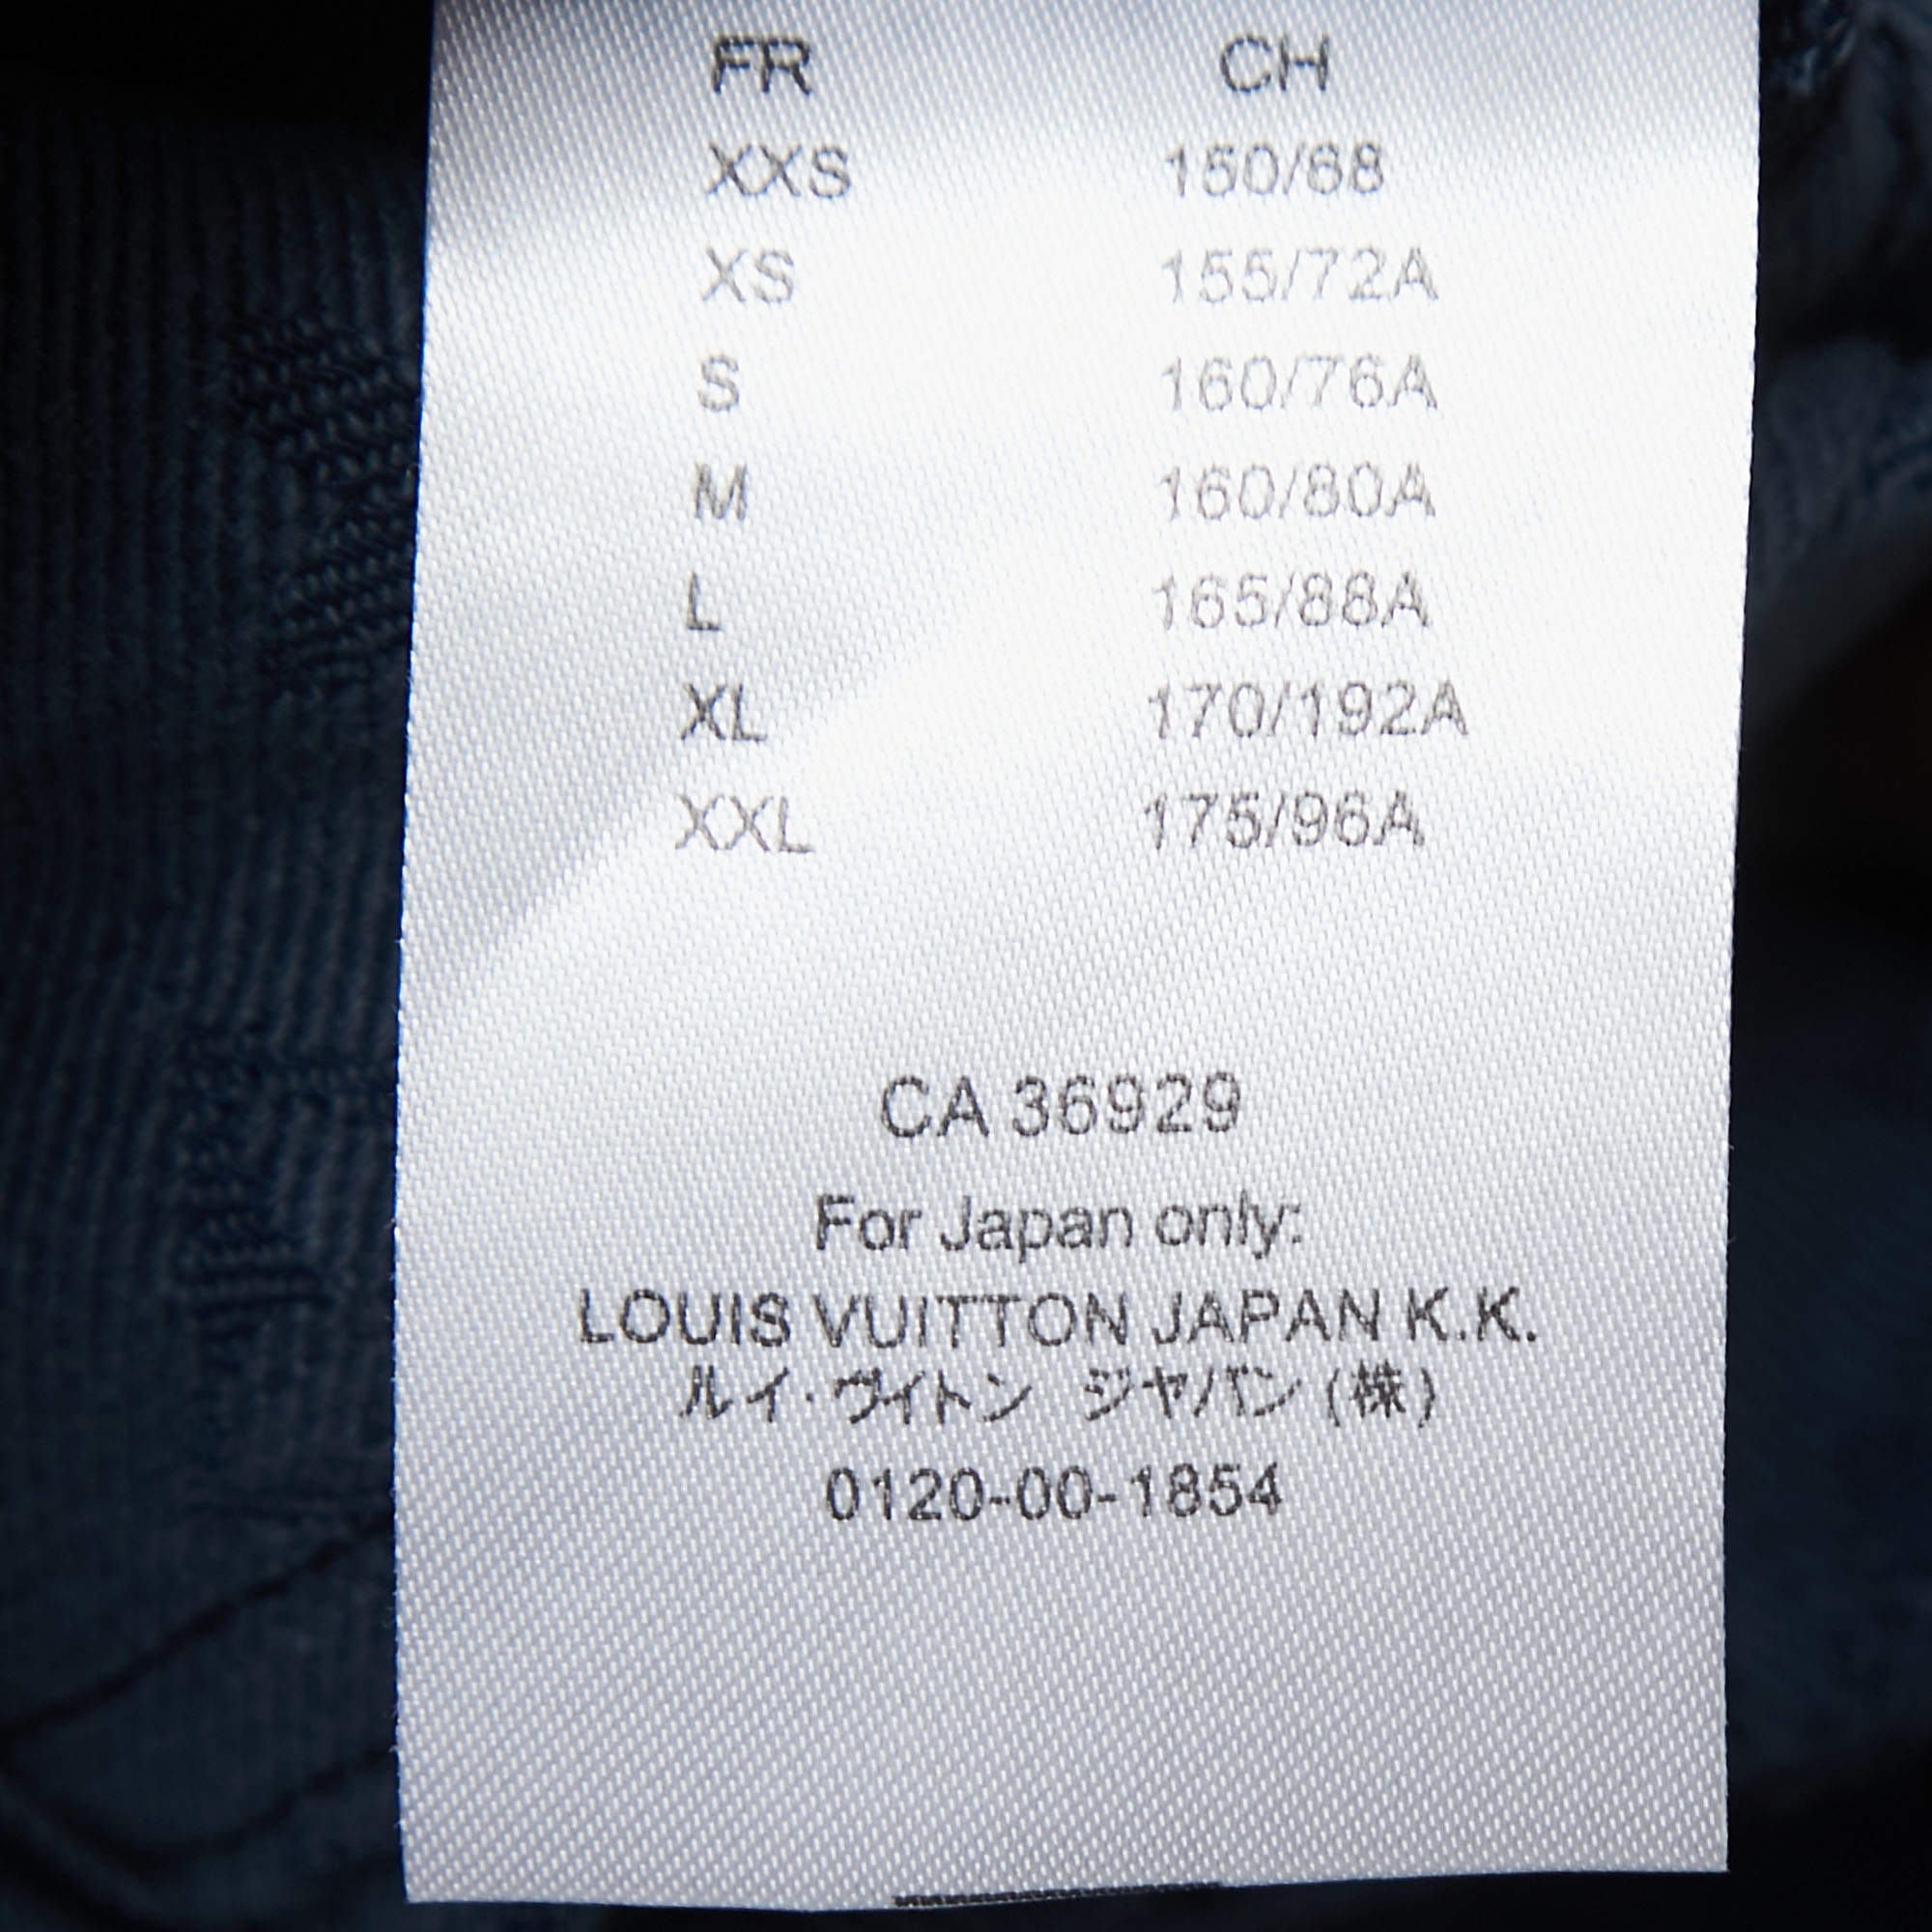 Louis Vuitton Men's Button Up Jacket Monogram Denim Purple 2107742